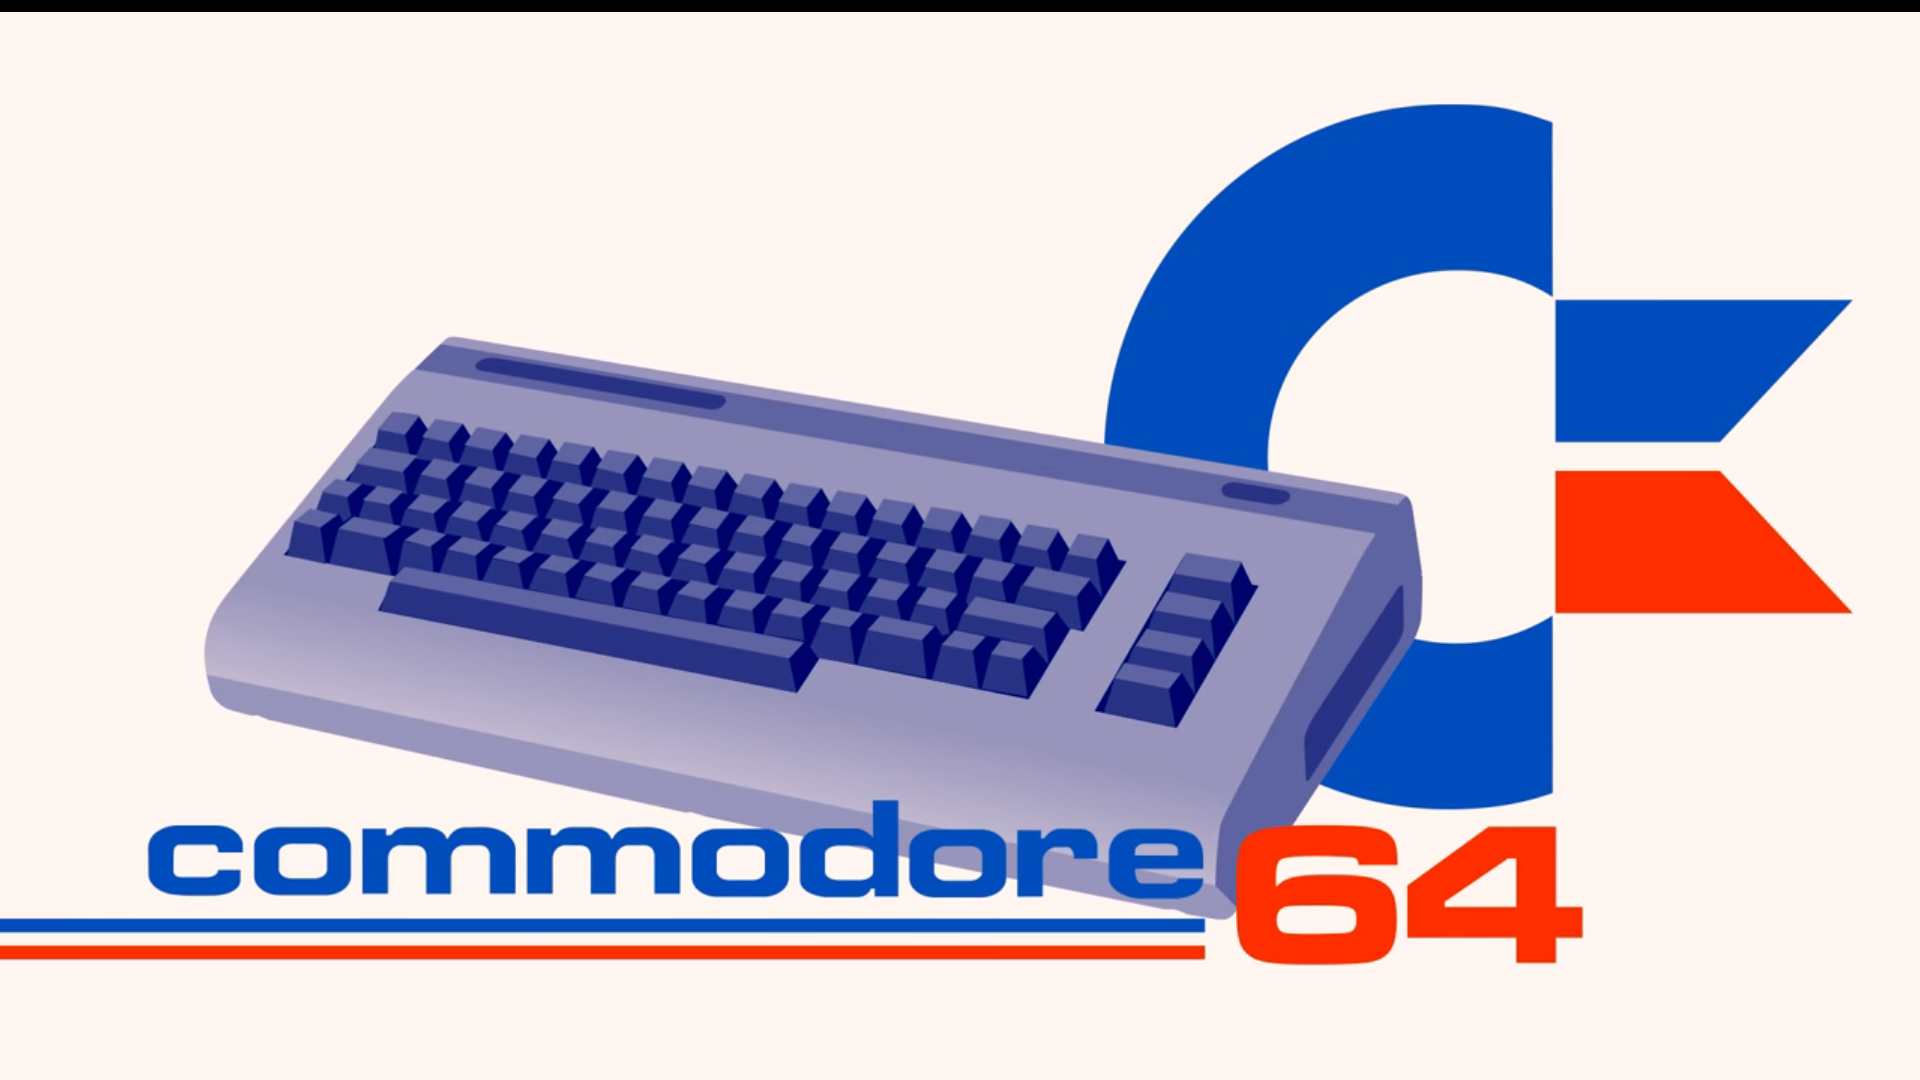 fond d'écran commodore 64,clavier d'ordinateur,la technologie,police de caractère,barre d'espace,bleu électrique